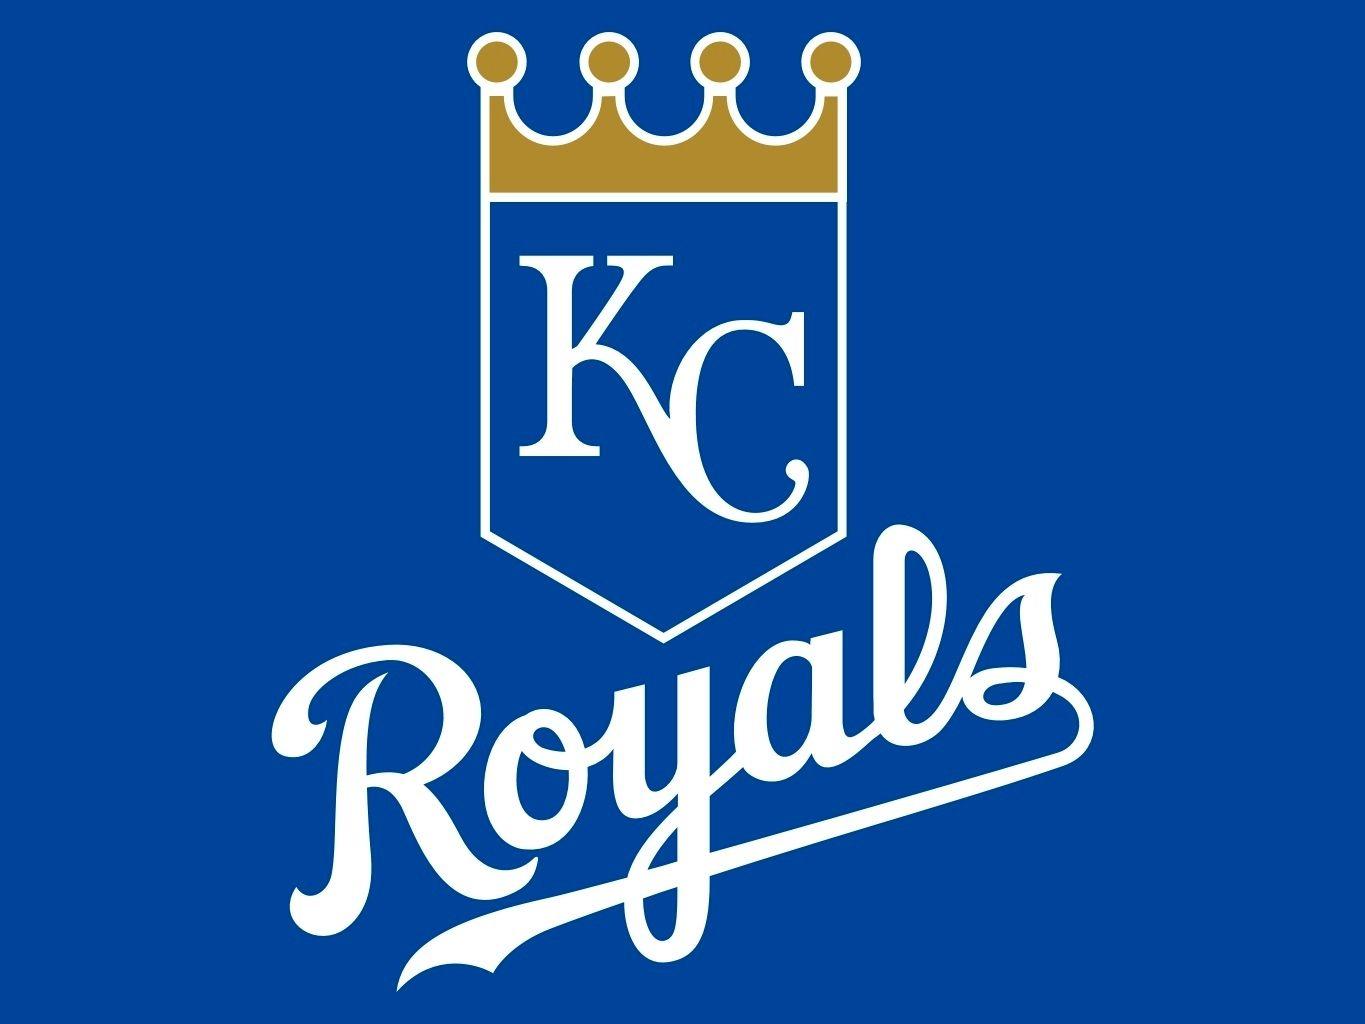 Royals Baseball Logo - Royals Baseball Logos. Kansas City Royals. KC Royals